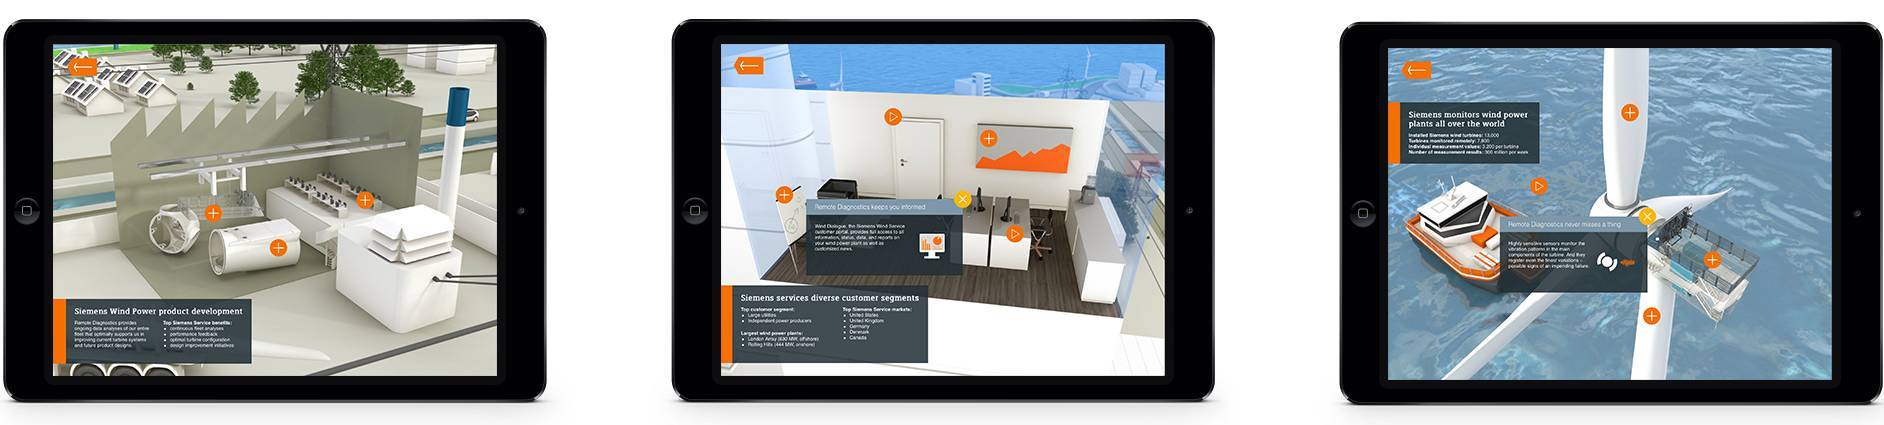 Screenshot aus der Remote-Diagnostik-Services-Animation auf iPads